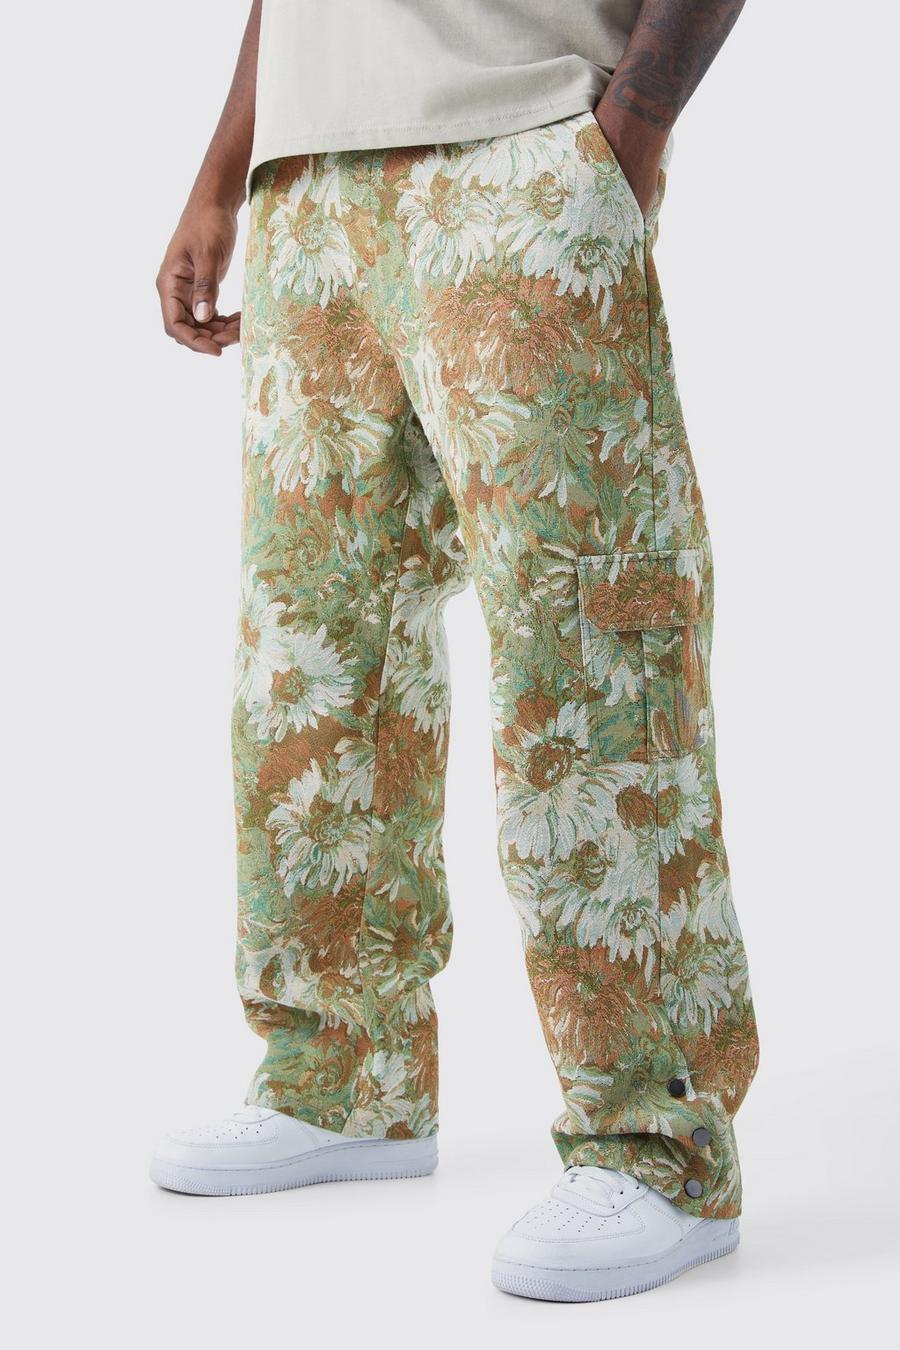 Pantaloni Plus Size rilassati a fiori stile arazzo con bottoni a pressione e vita fissa, Sage verde